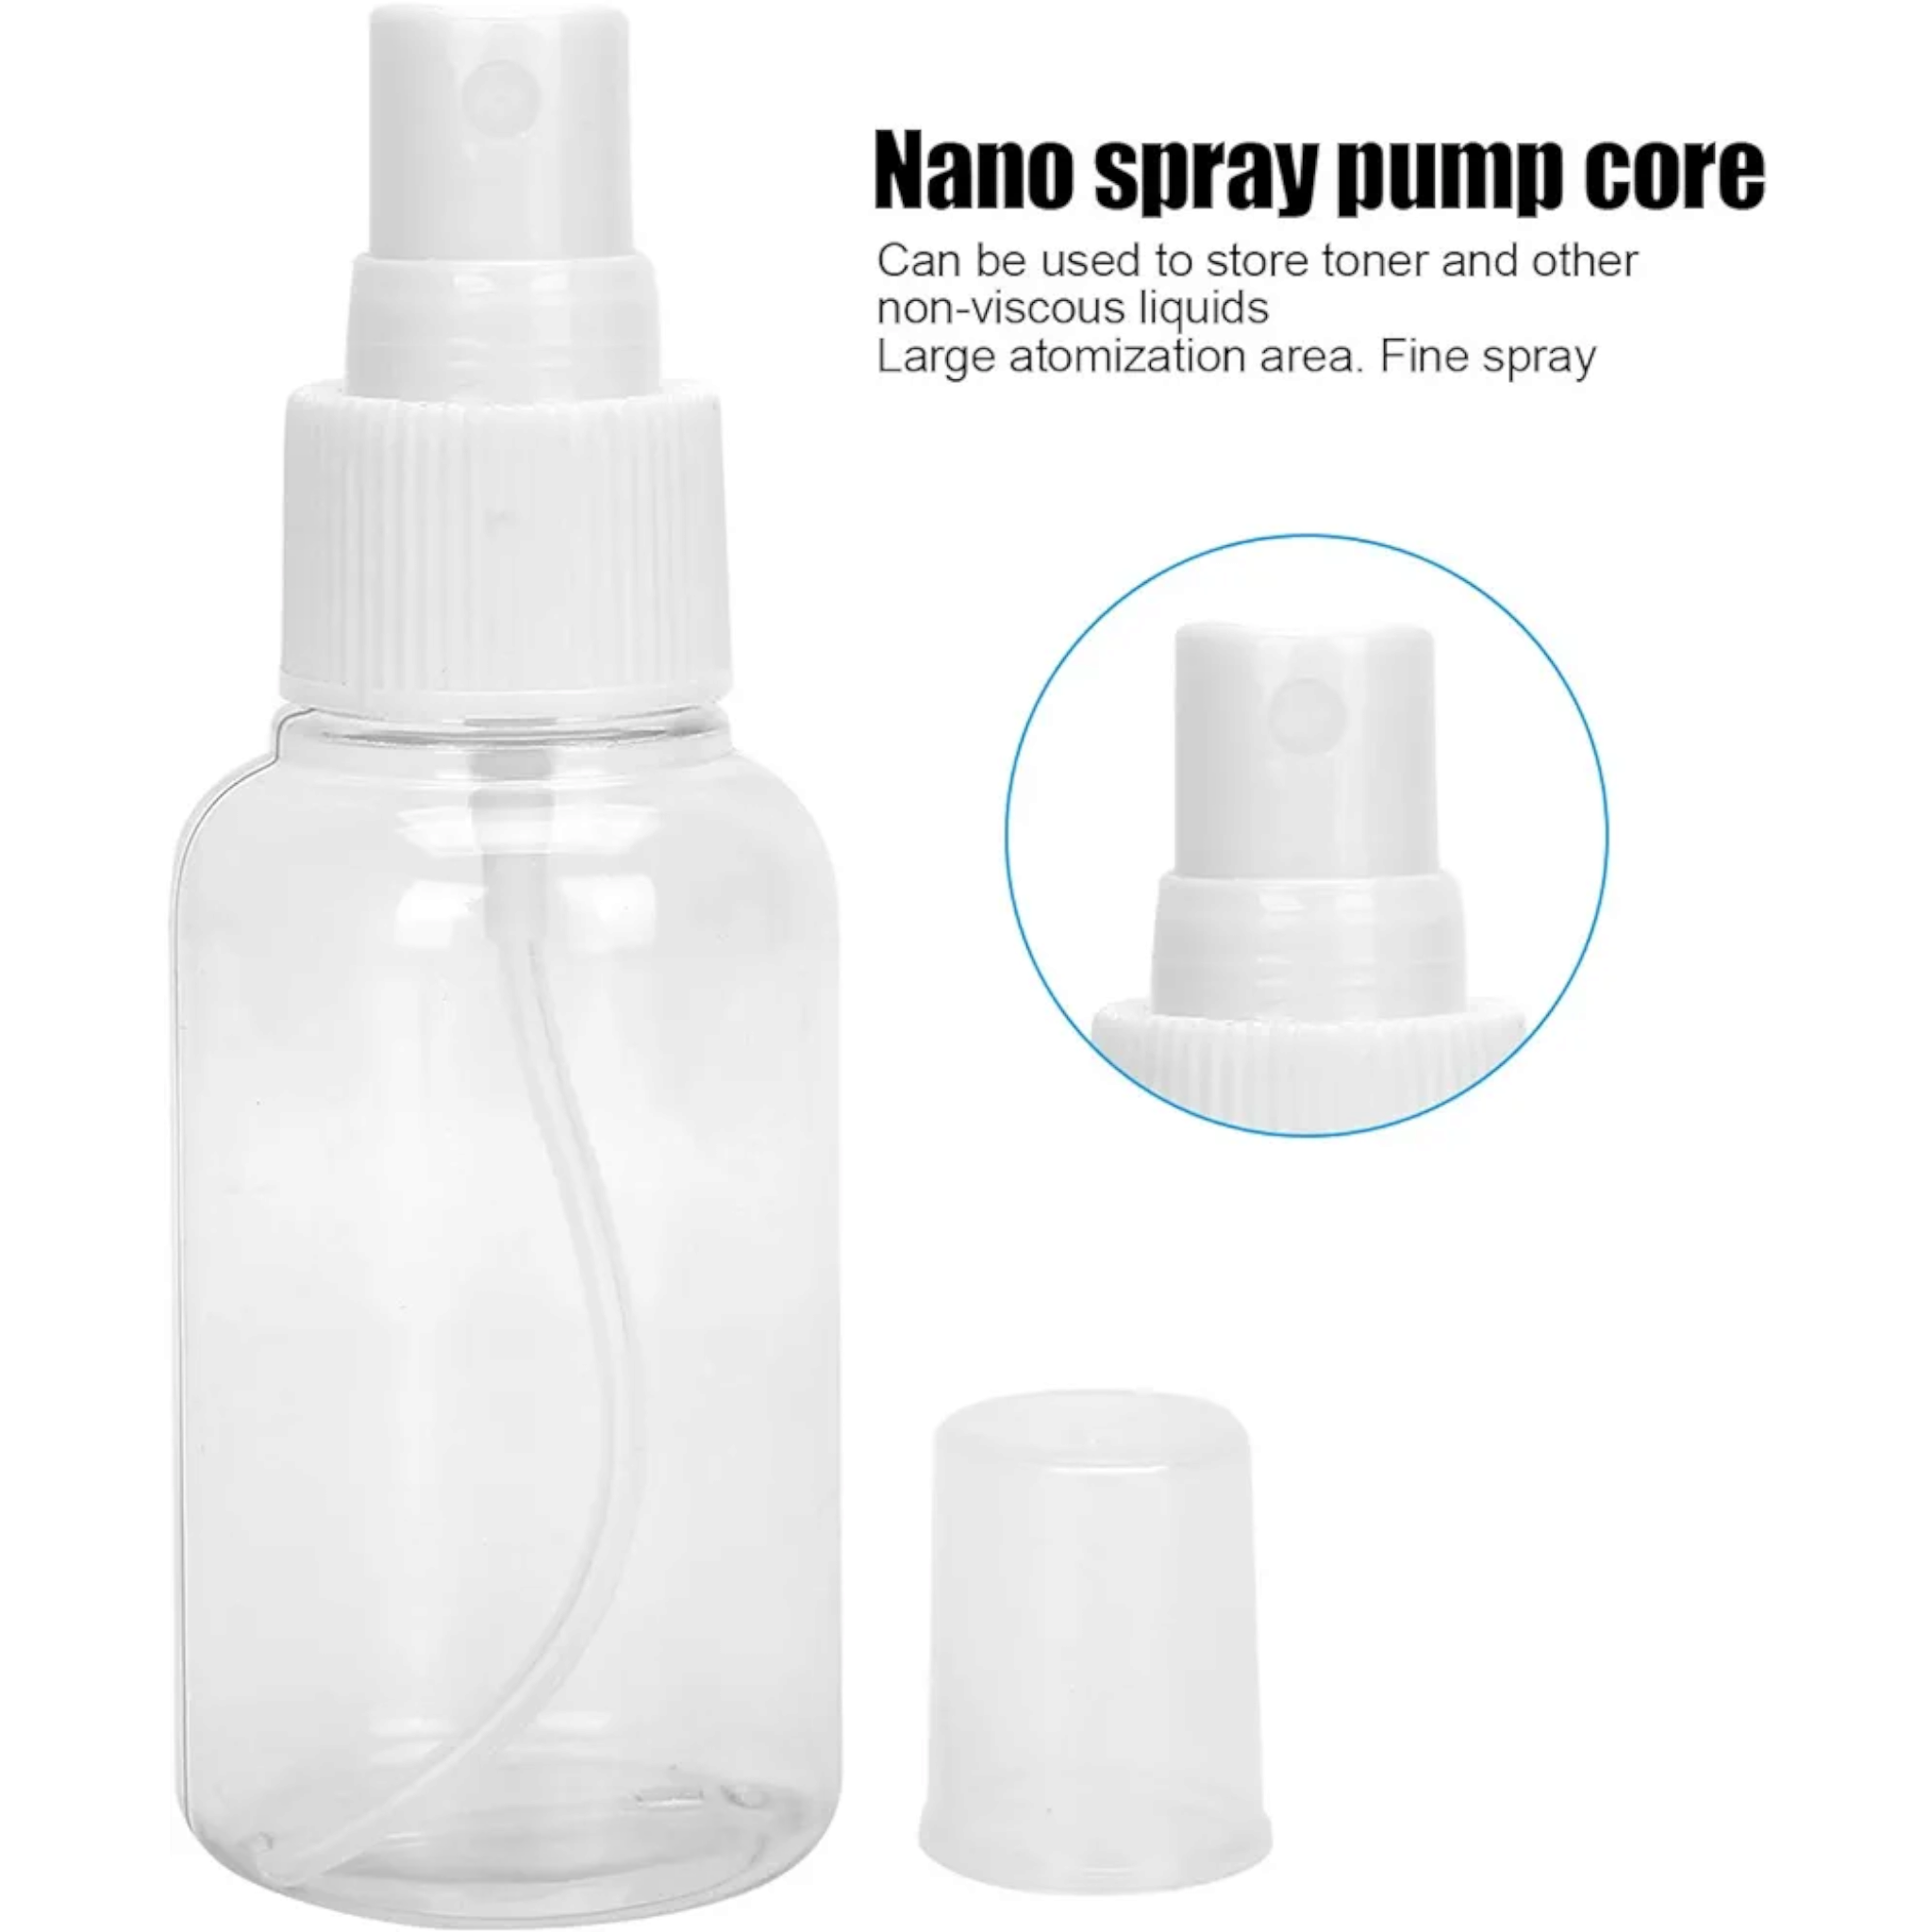 Portable Empty Refillable Clear Empty Lotion Bottle PET Plastic